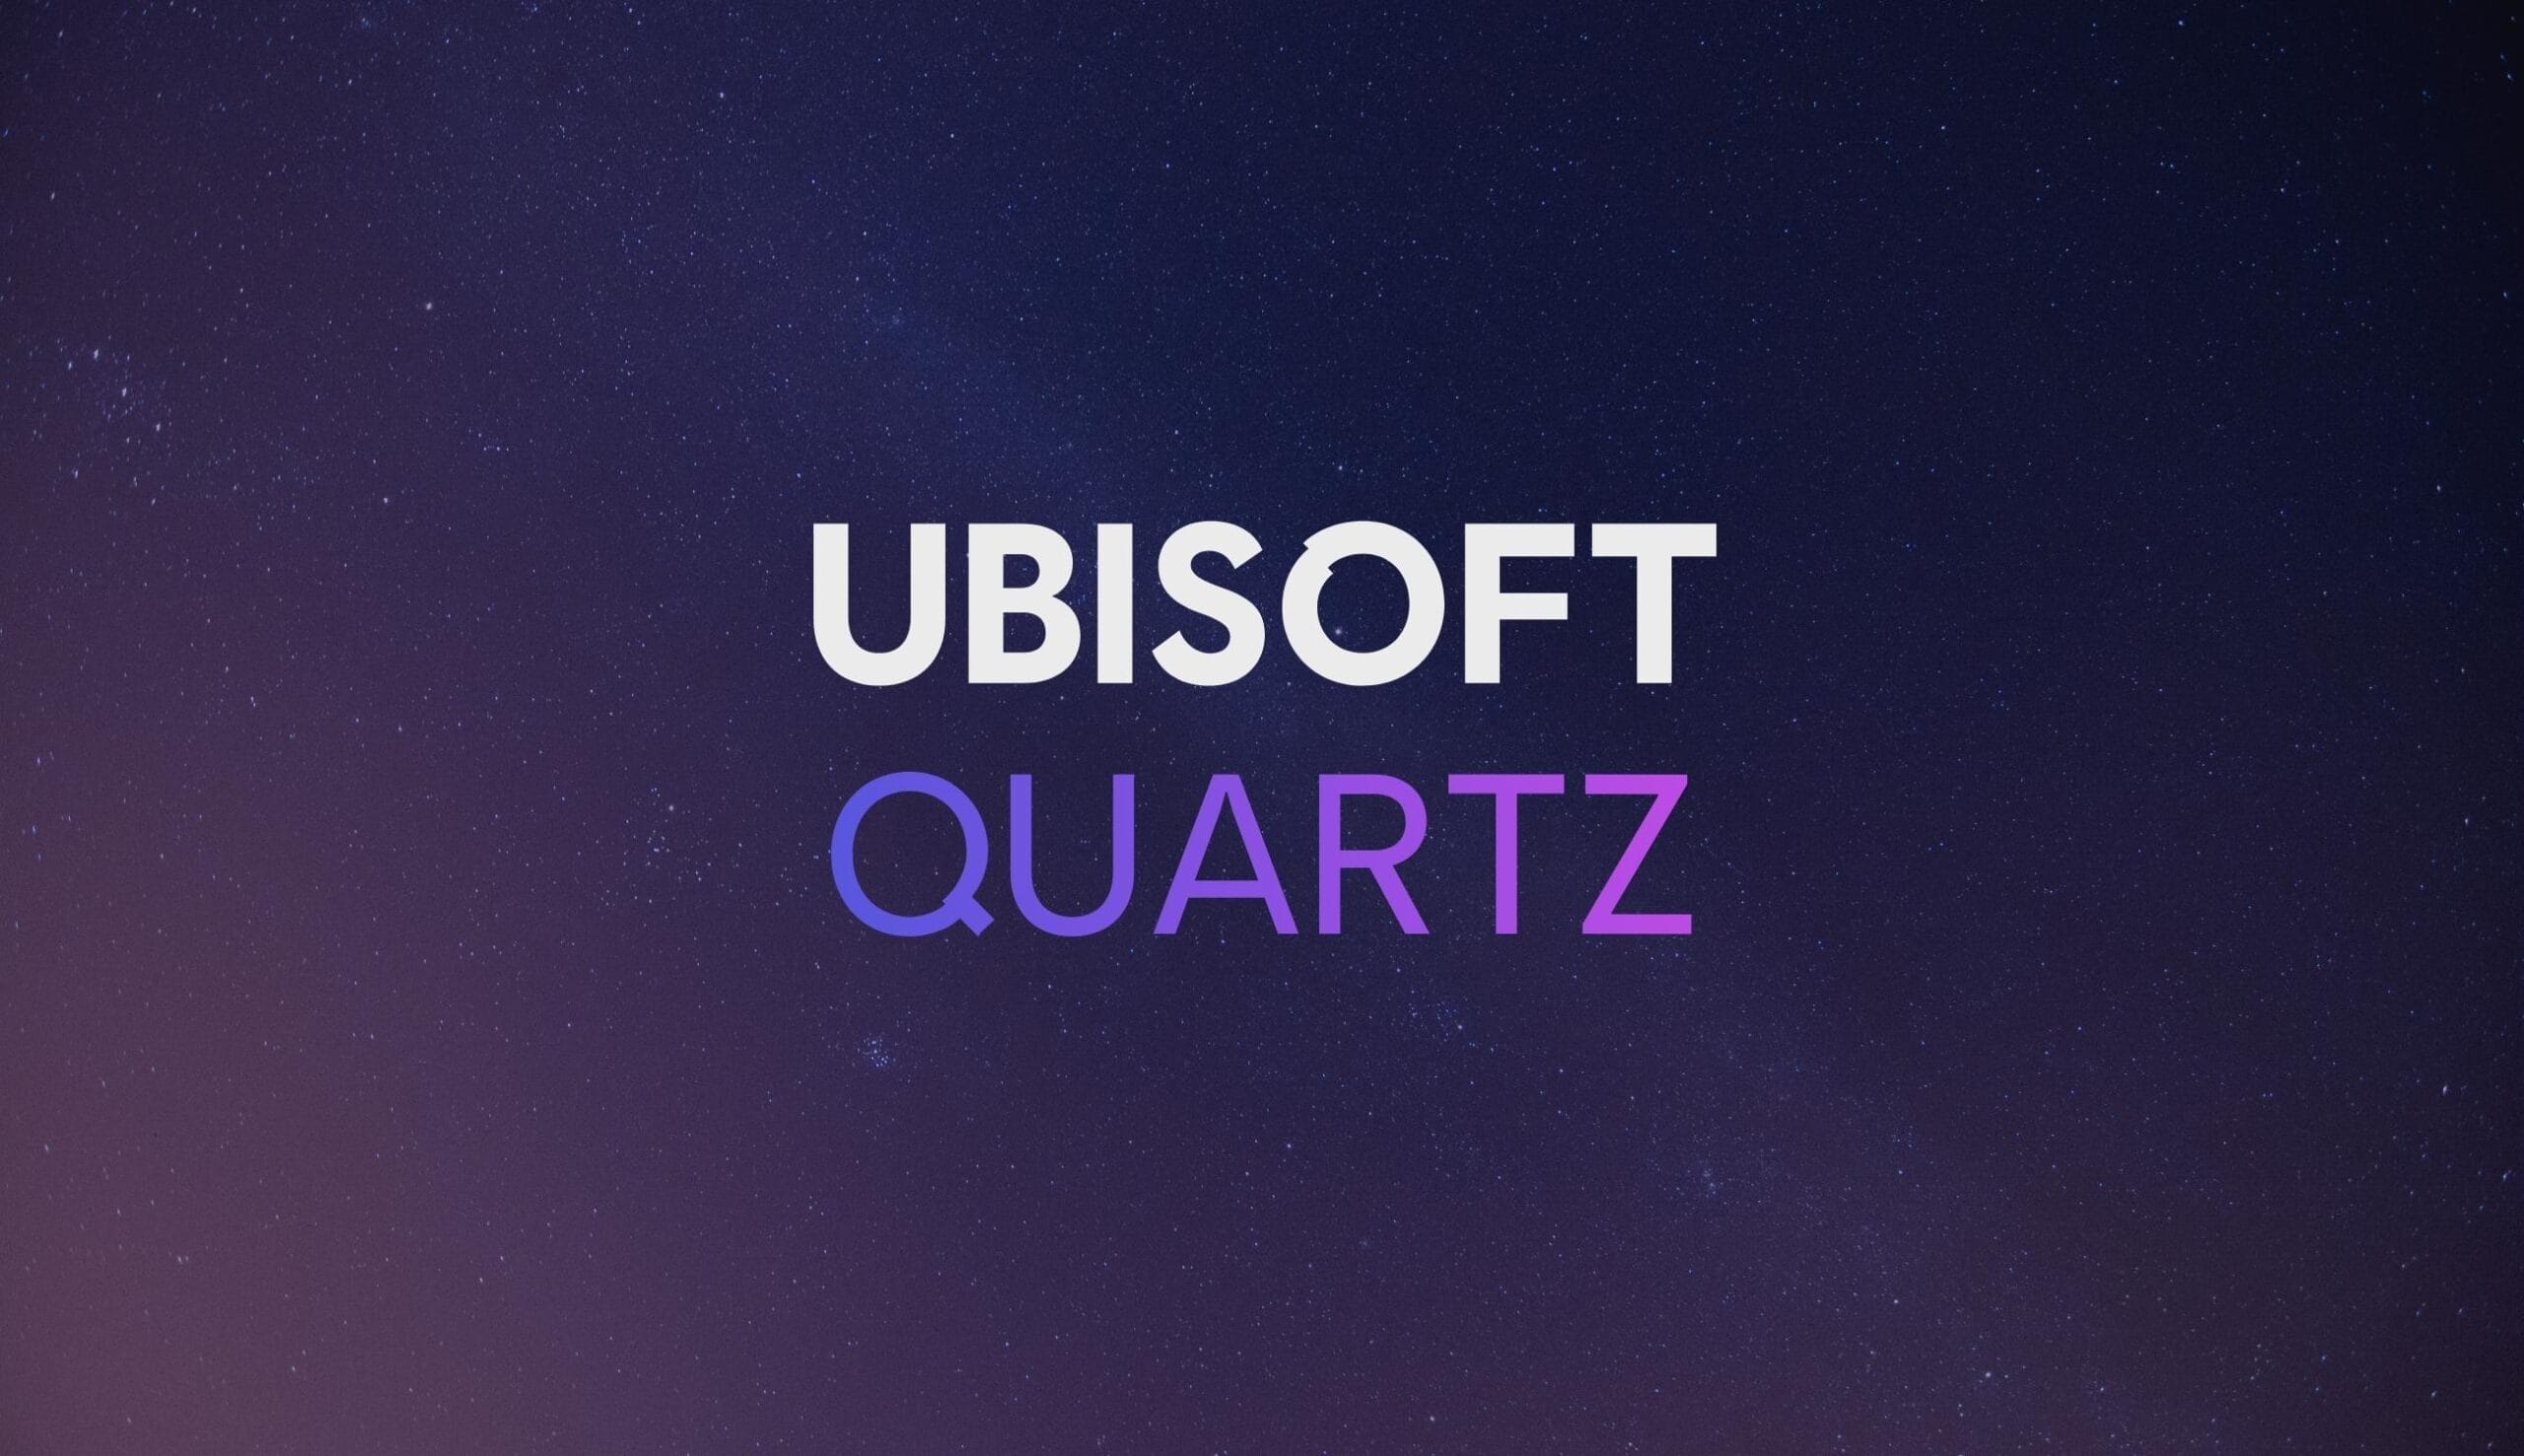 Ubisoft Quartz.